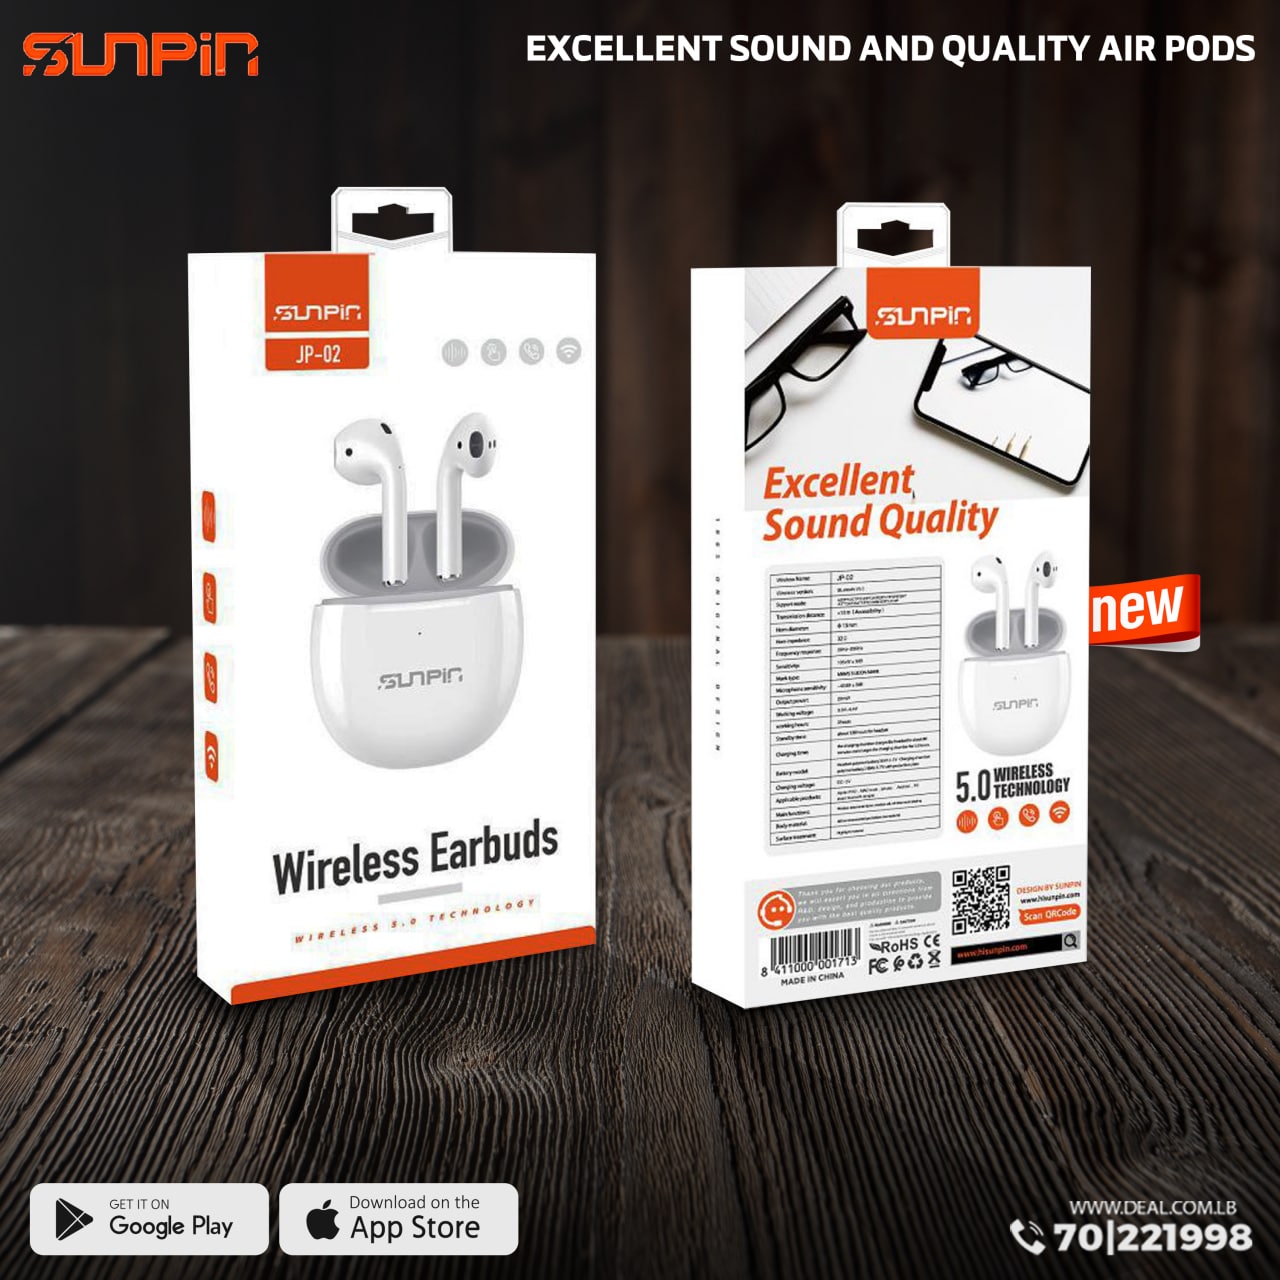 Sunpin Wireless Earbuds jp-02